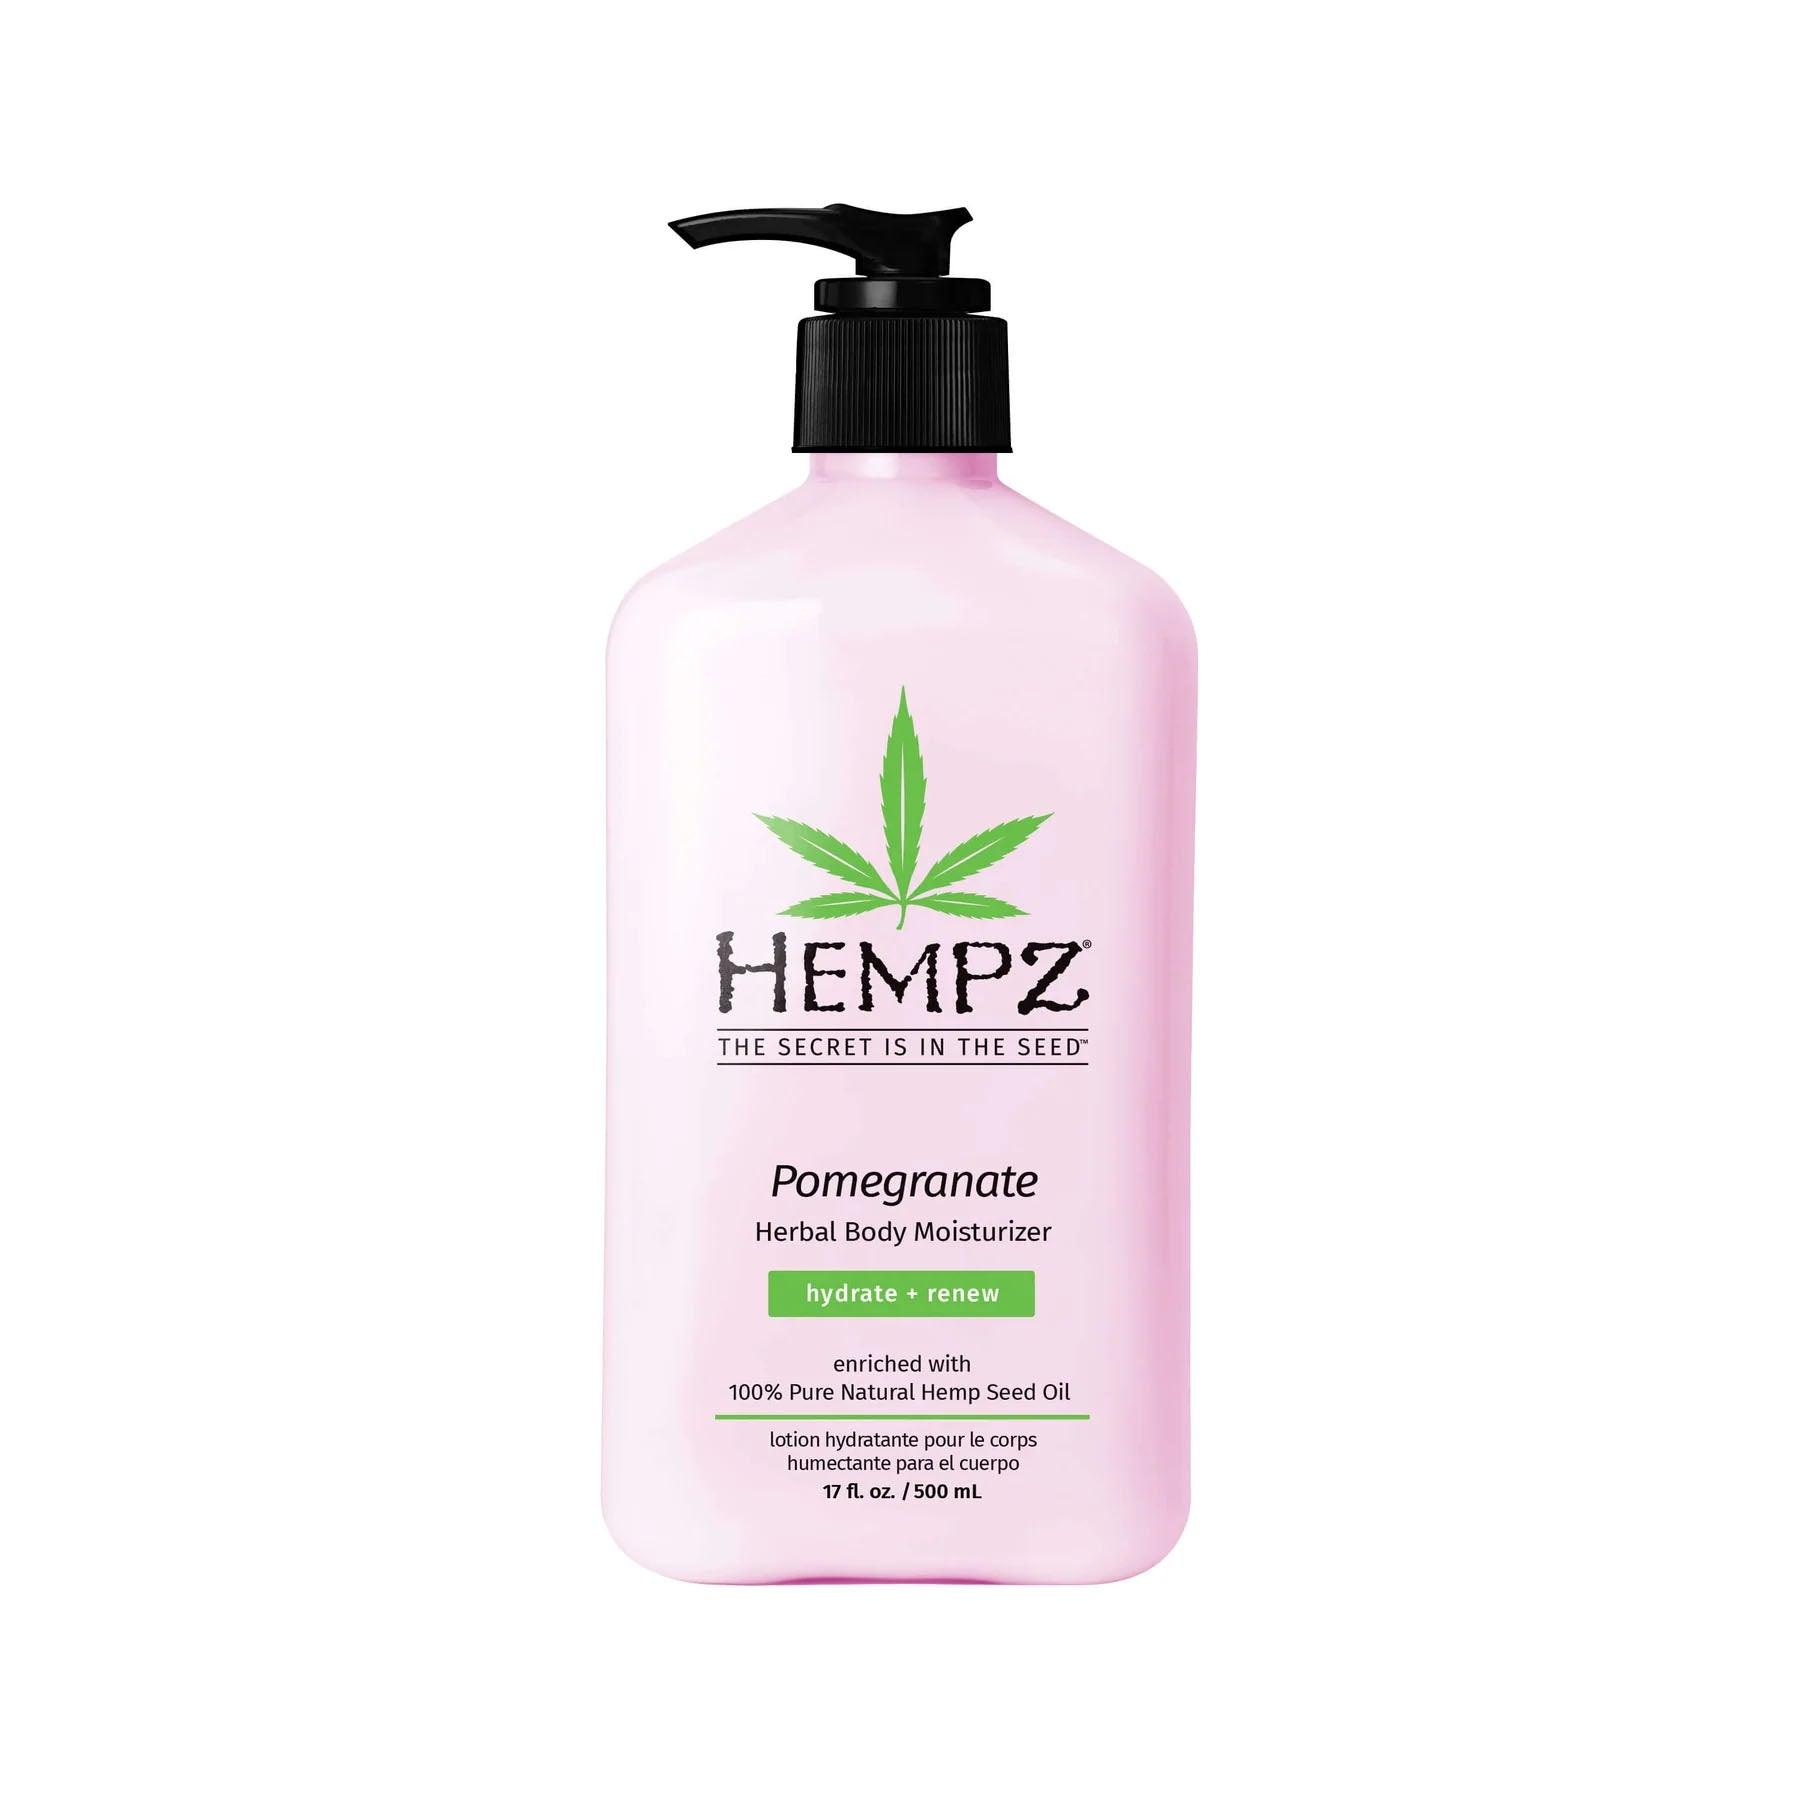 Hempz Lotion Pure Herbal Body Moisturizers 17 fl oz - Pomegranate